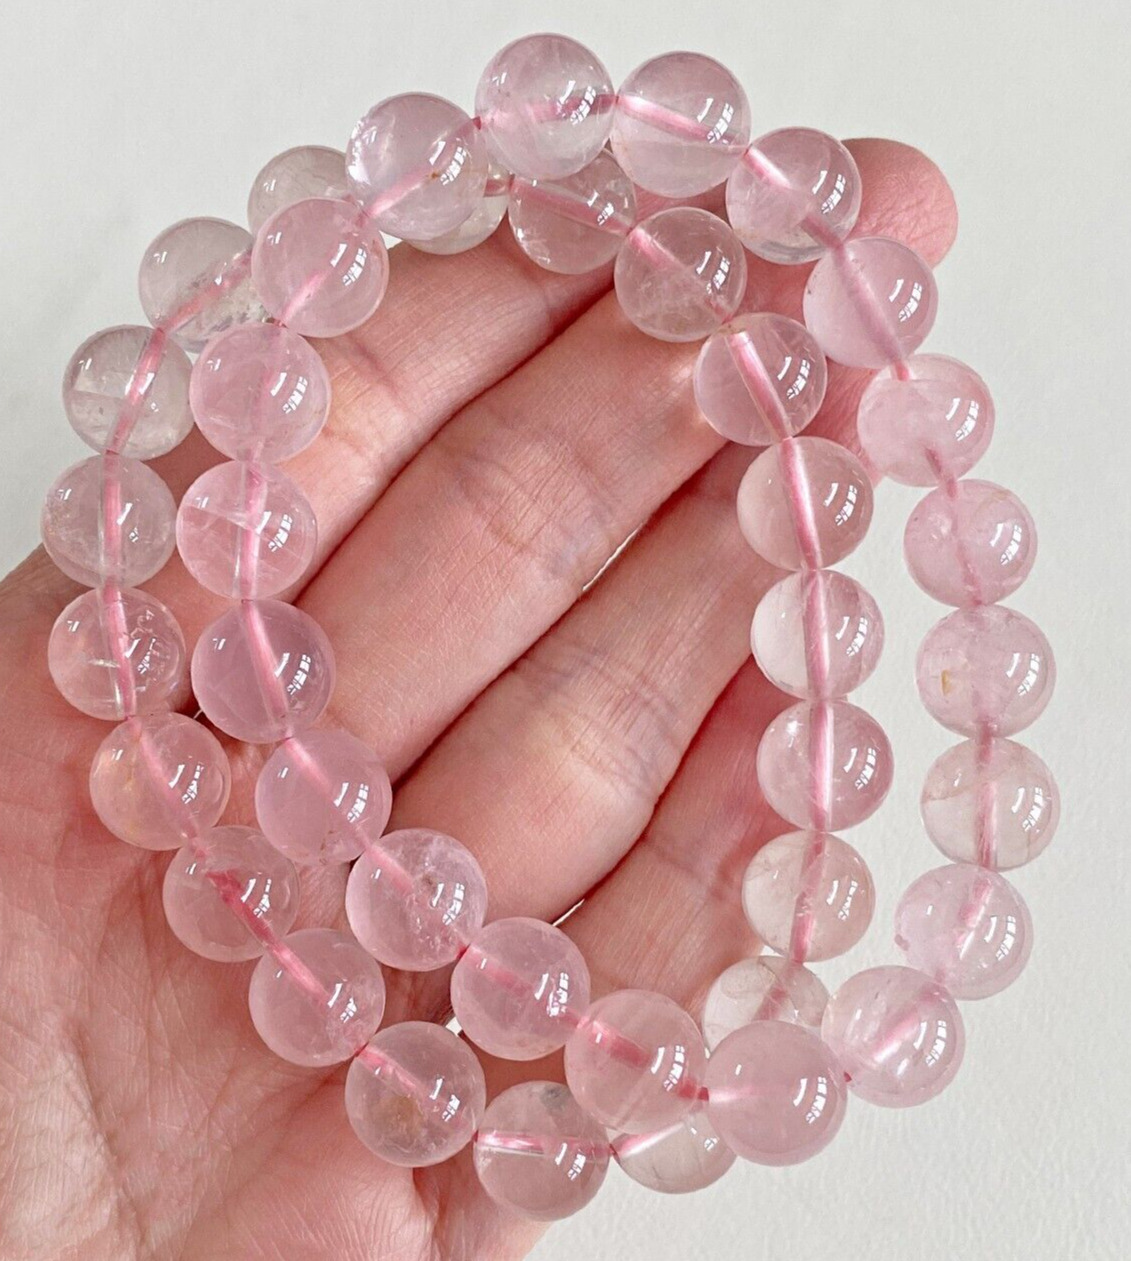 Natural 10mm Pink Rose Quartz Crystal Round Gemstone Stretch Bracelet For Love